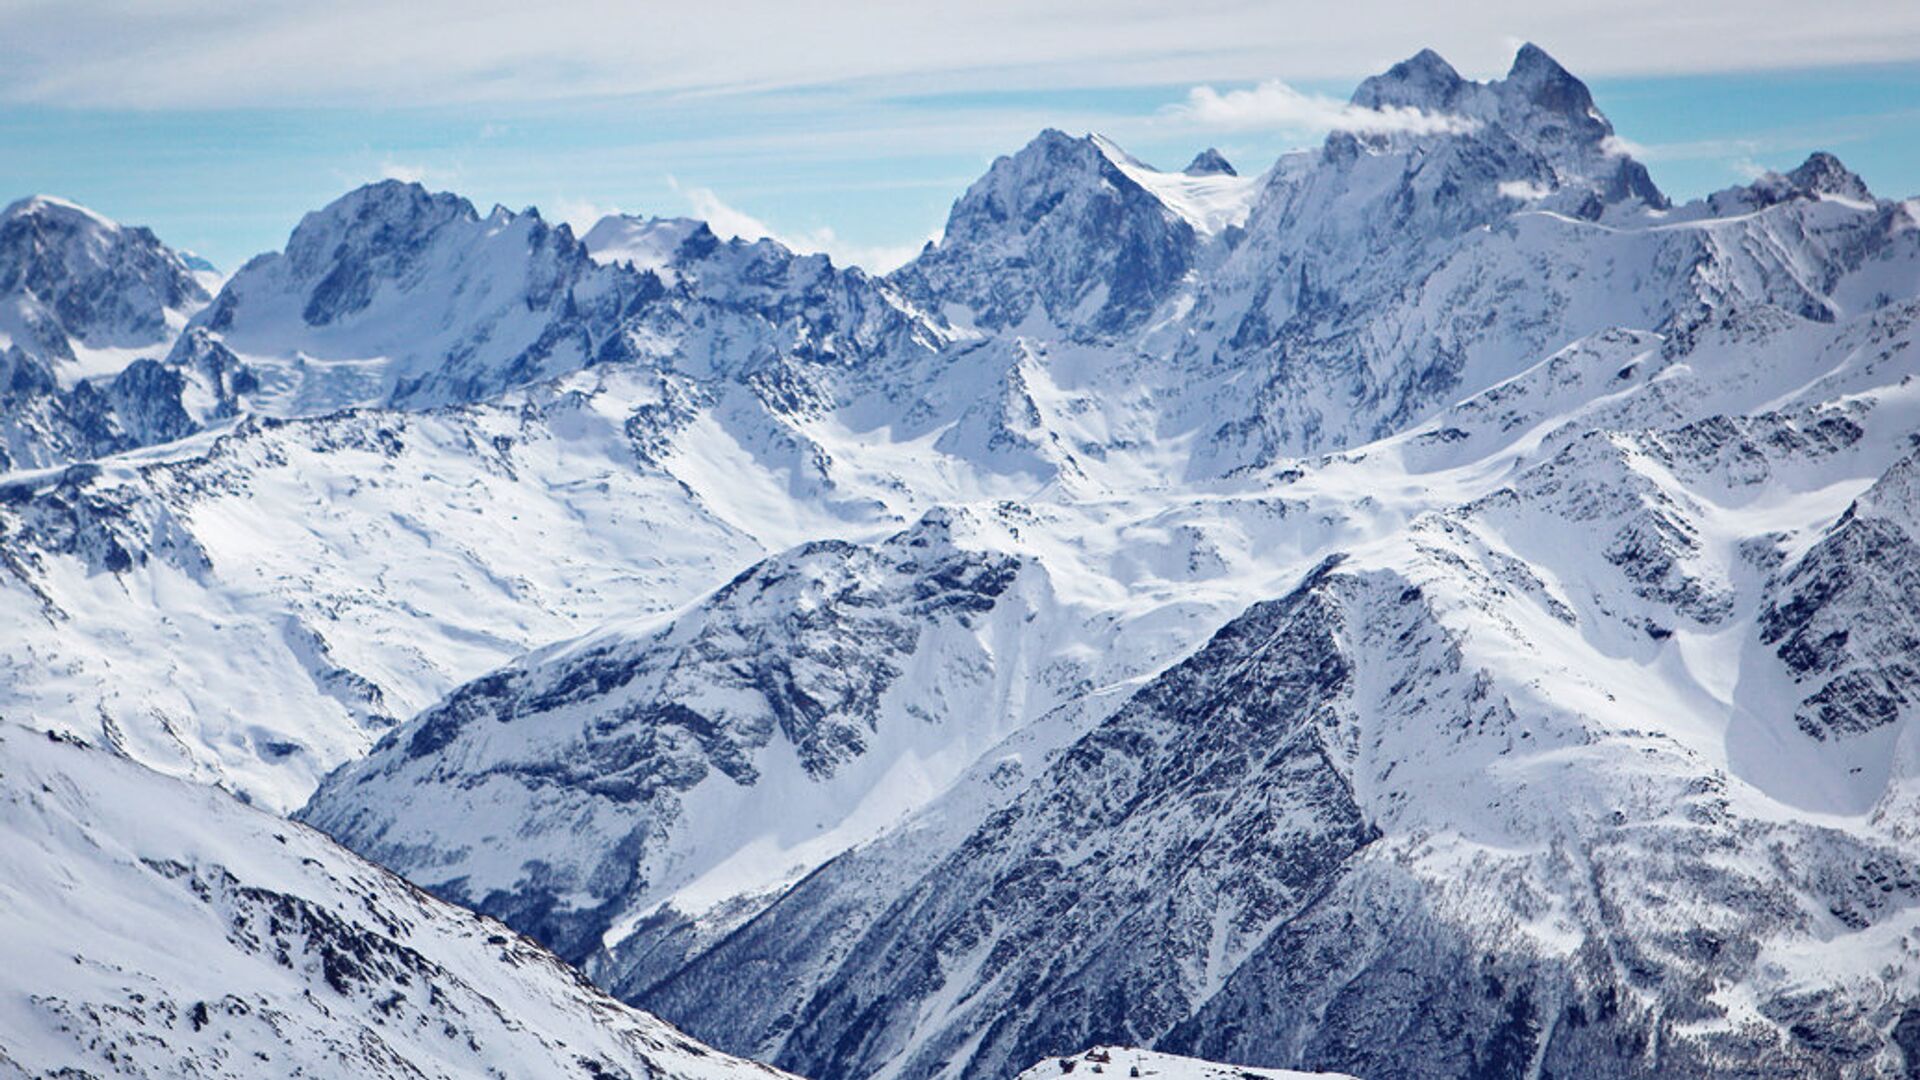 СК начал проверку после гибели трех альпинистов на Эльбрусе